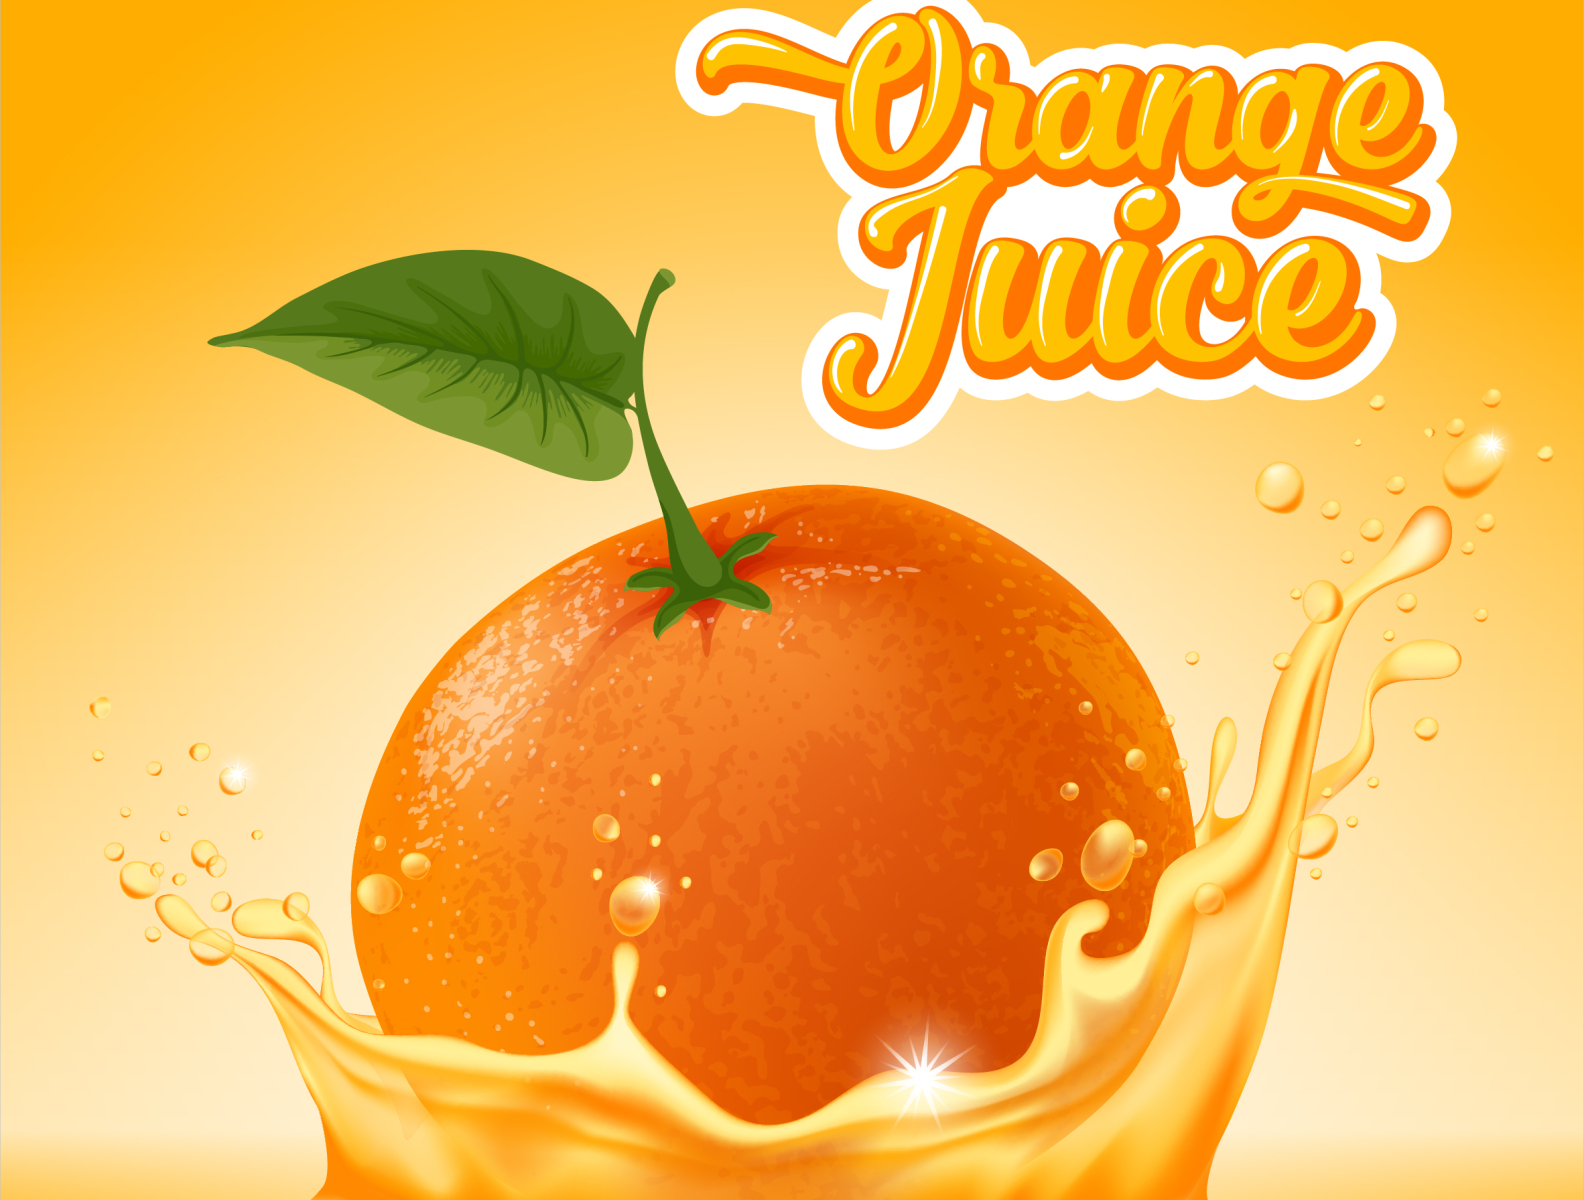 juice ads